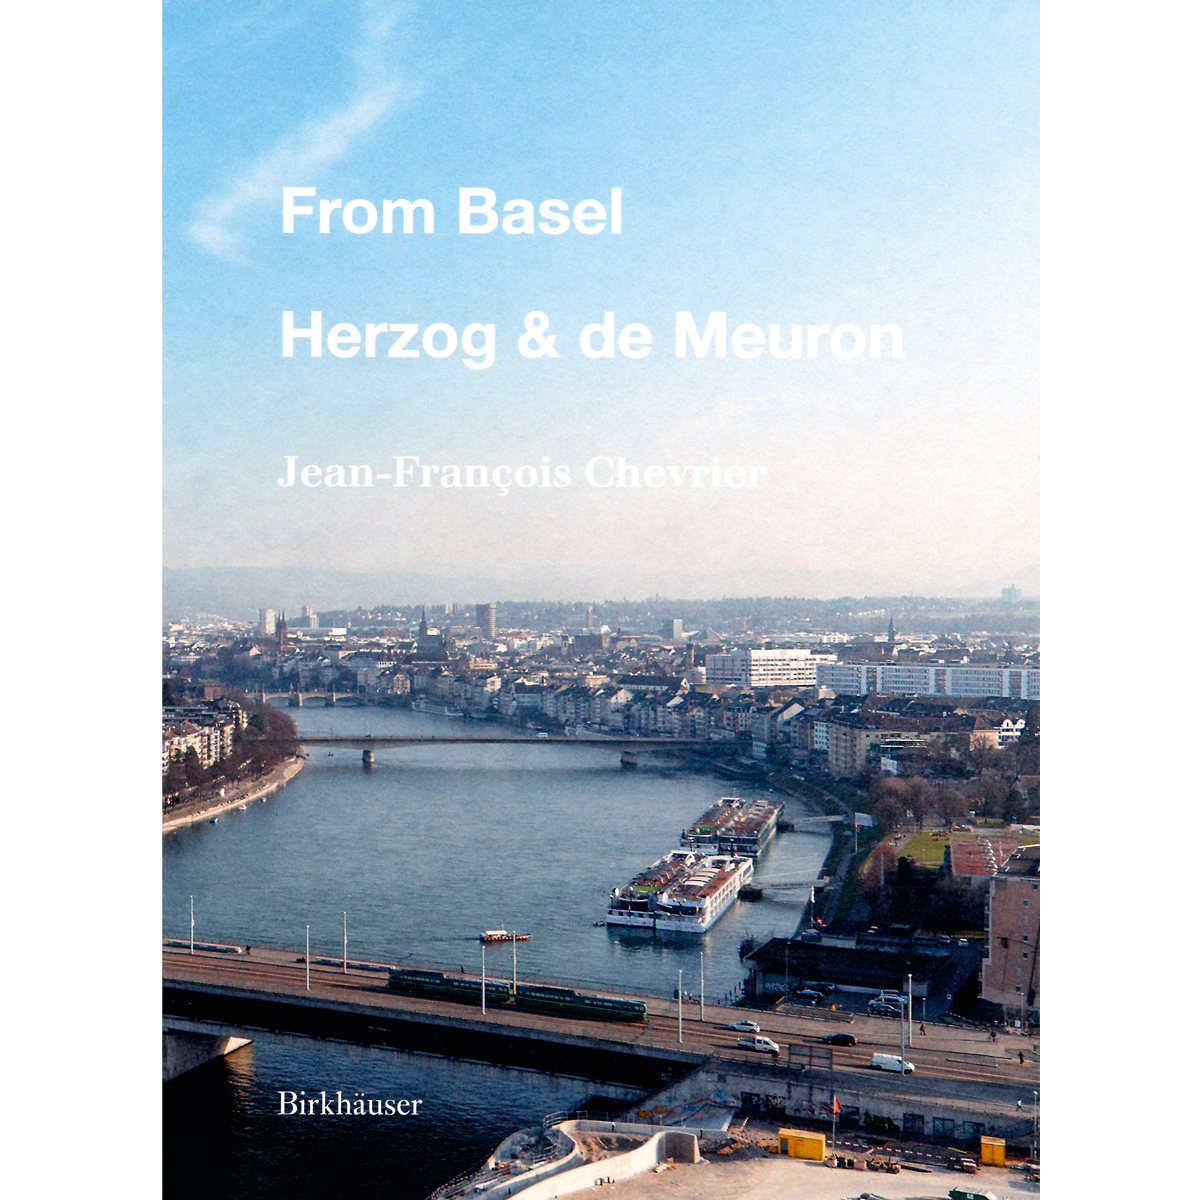 From Basel, Herzog & de Meuron